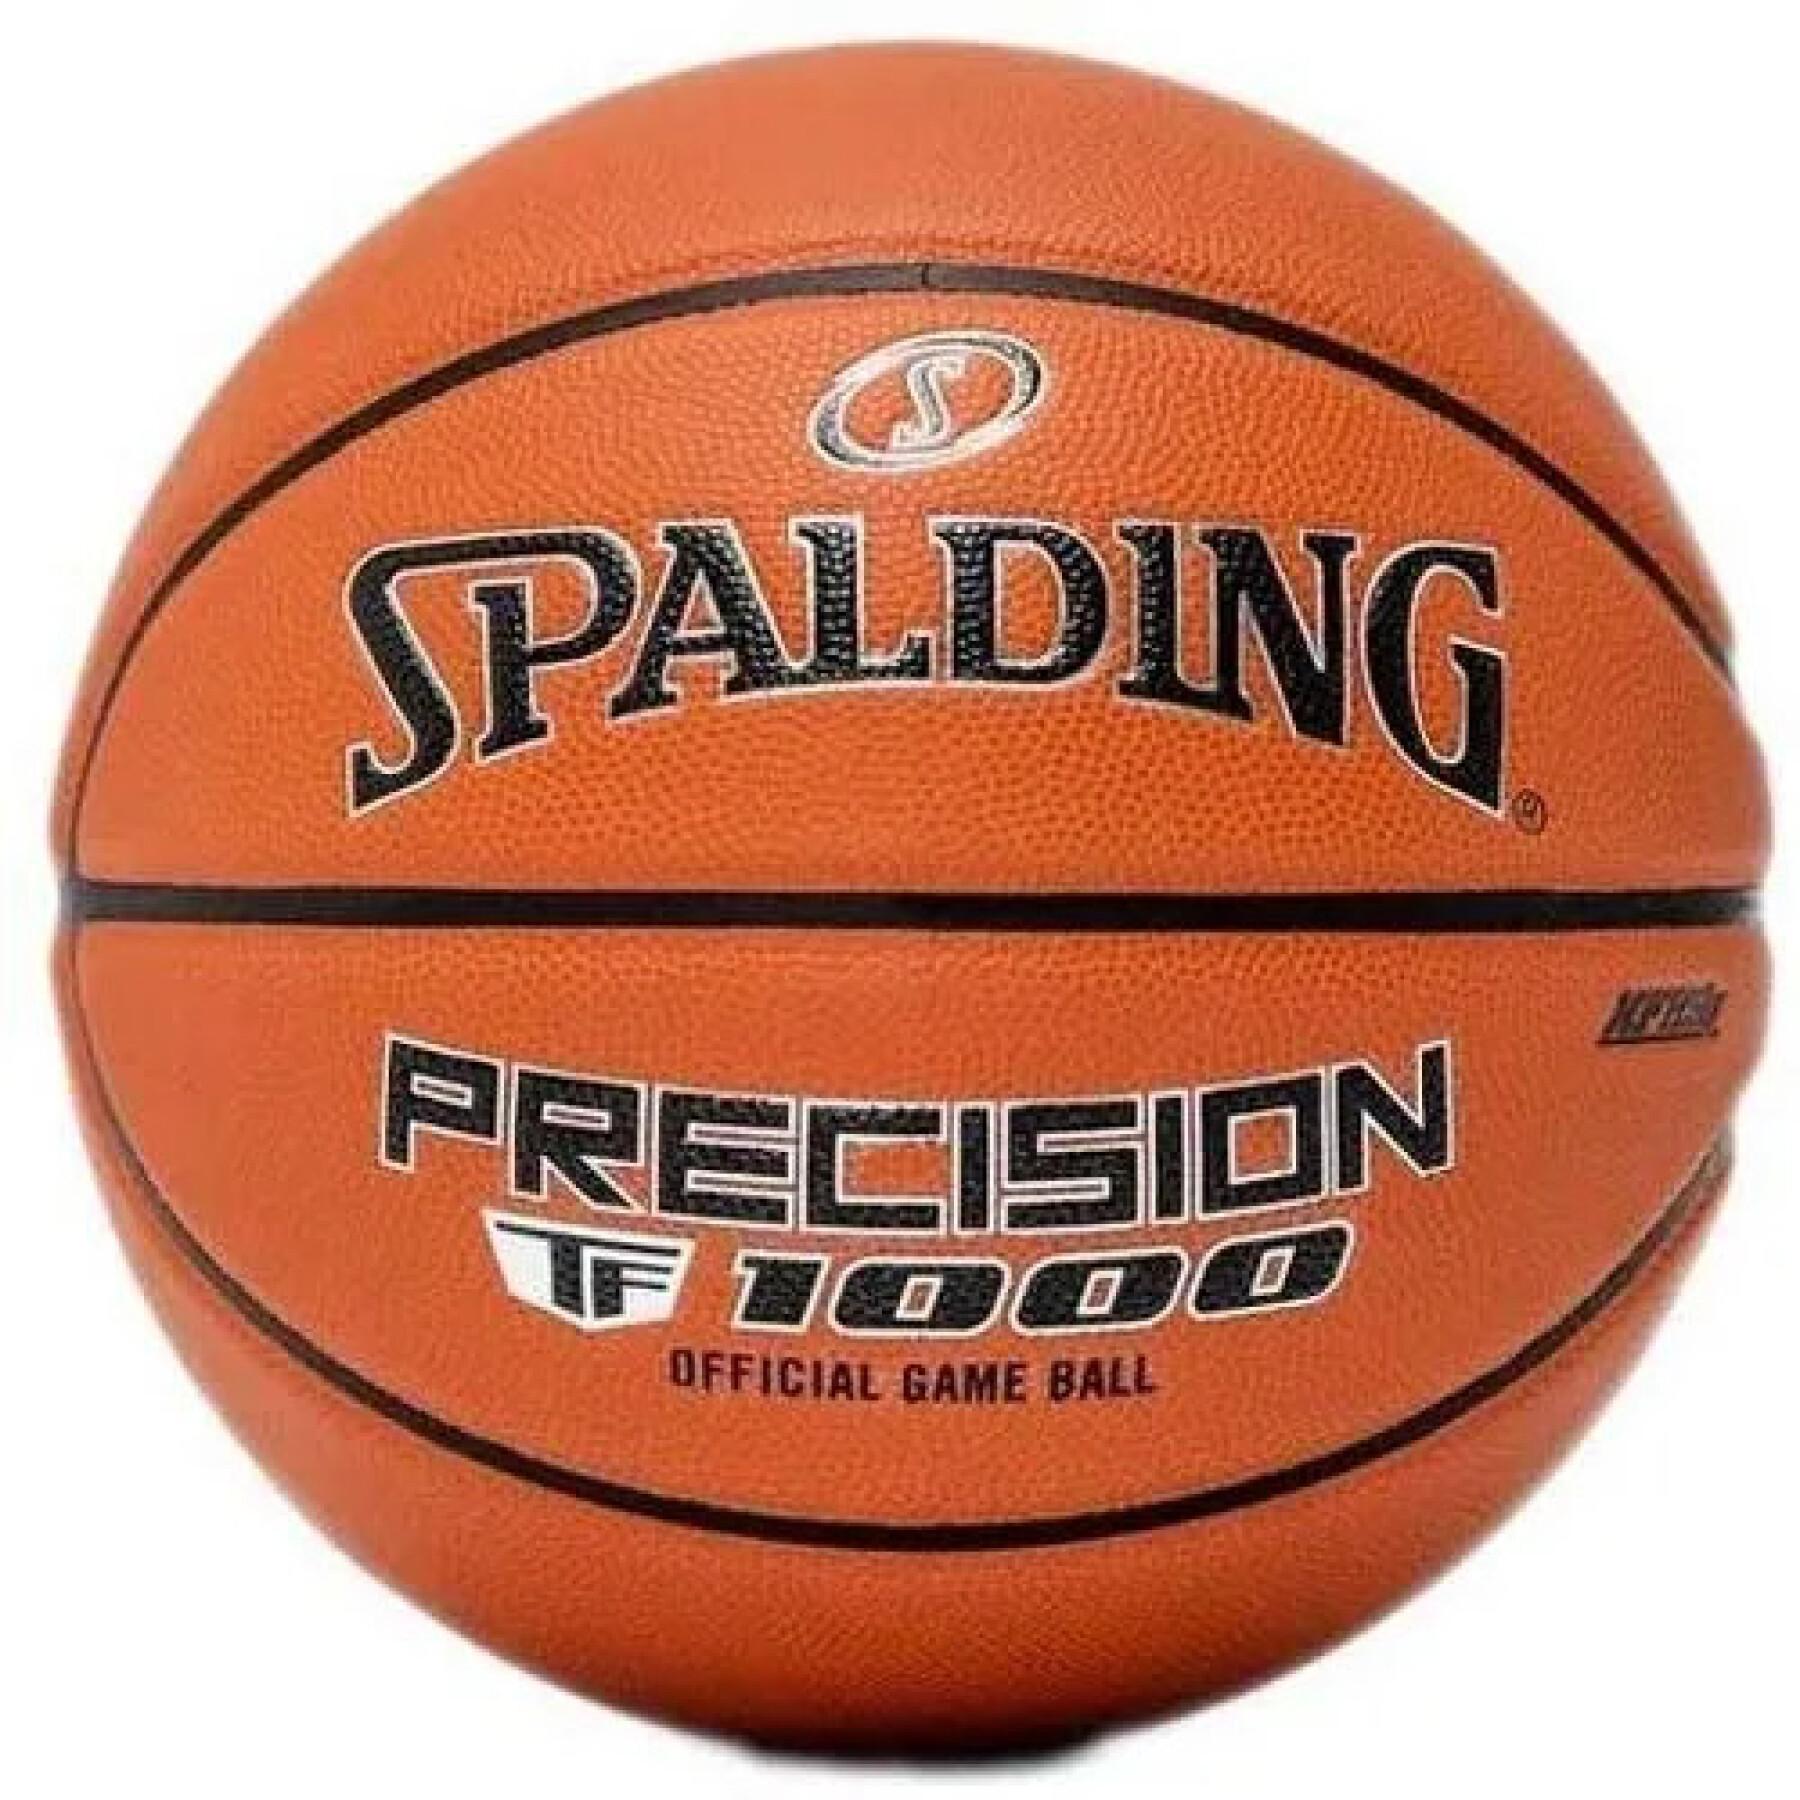 Balão Spalding TF-1000 Precision FIBA Composite